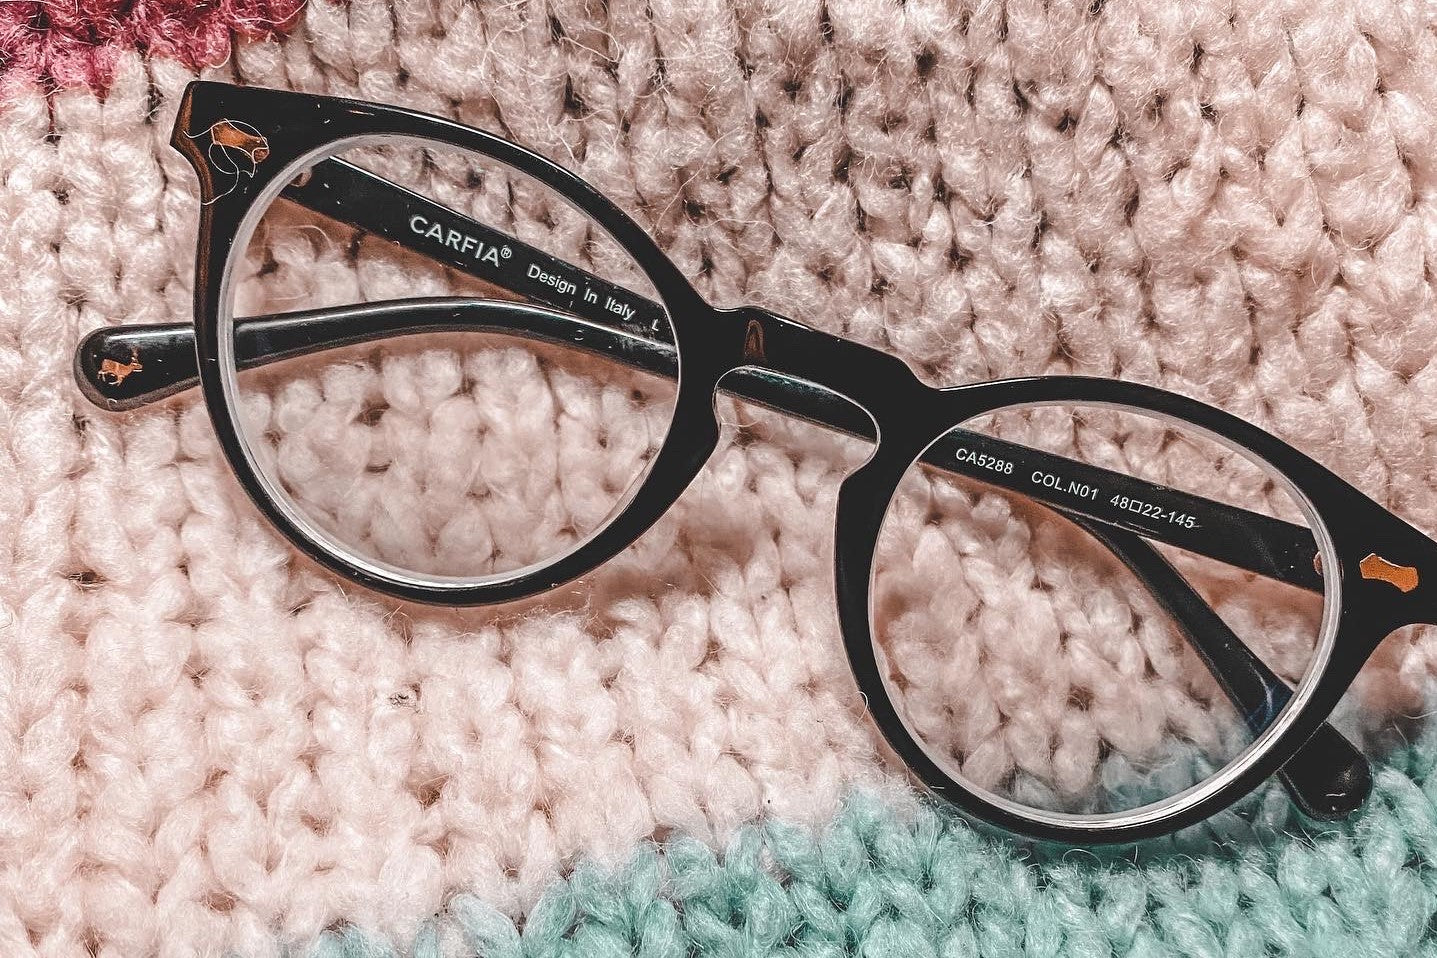 Do 1.0 reading glasses do anything? | KOALAEYE OPTICAL